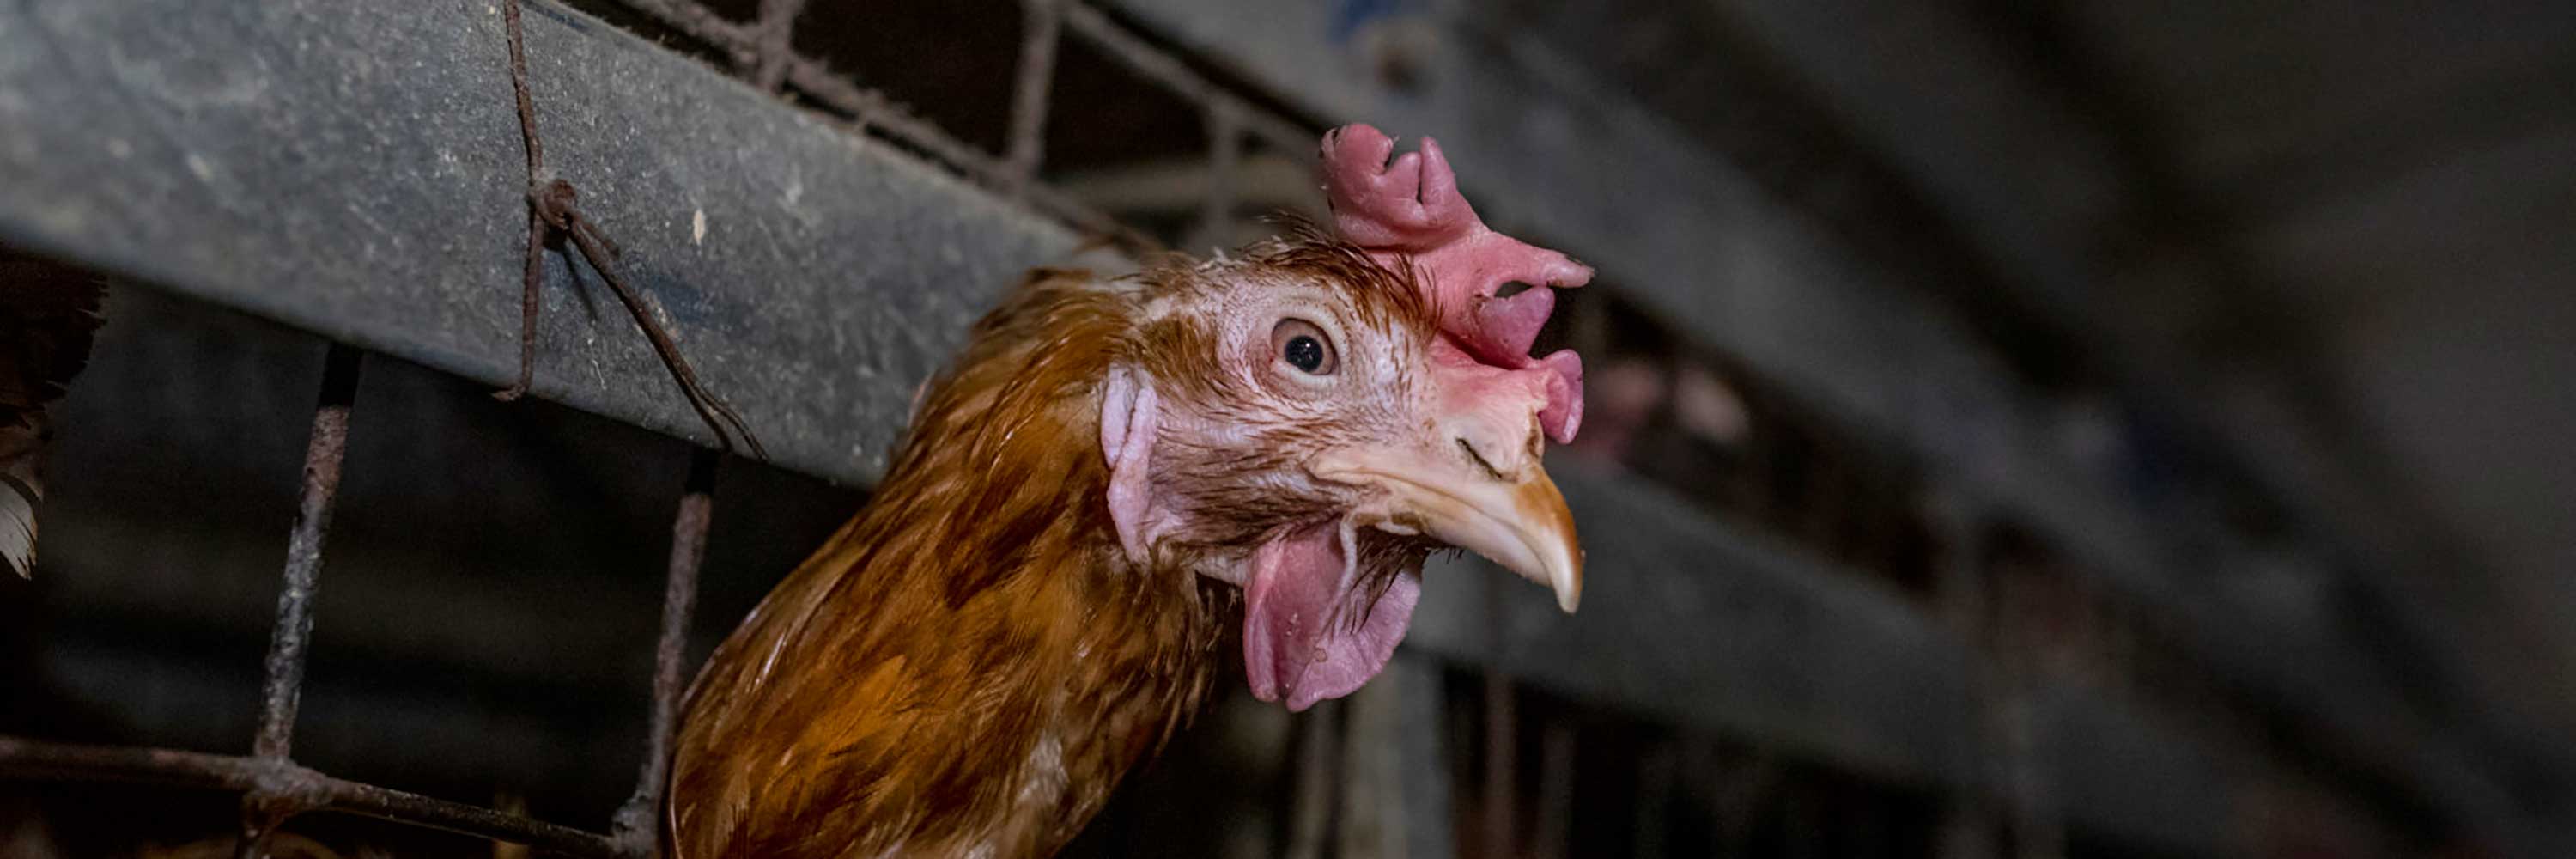 Hen in factory farm